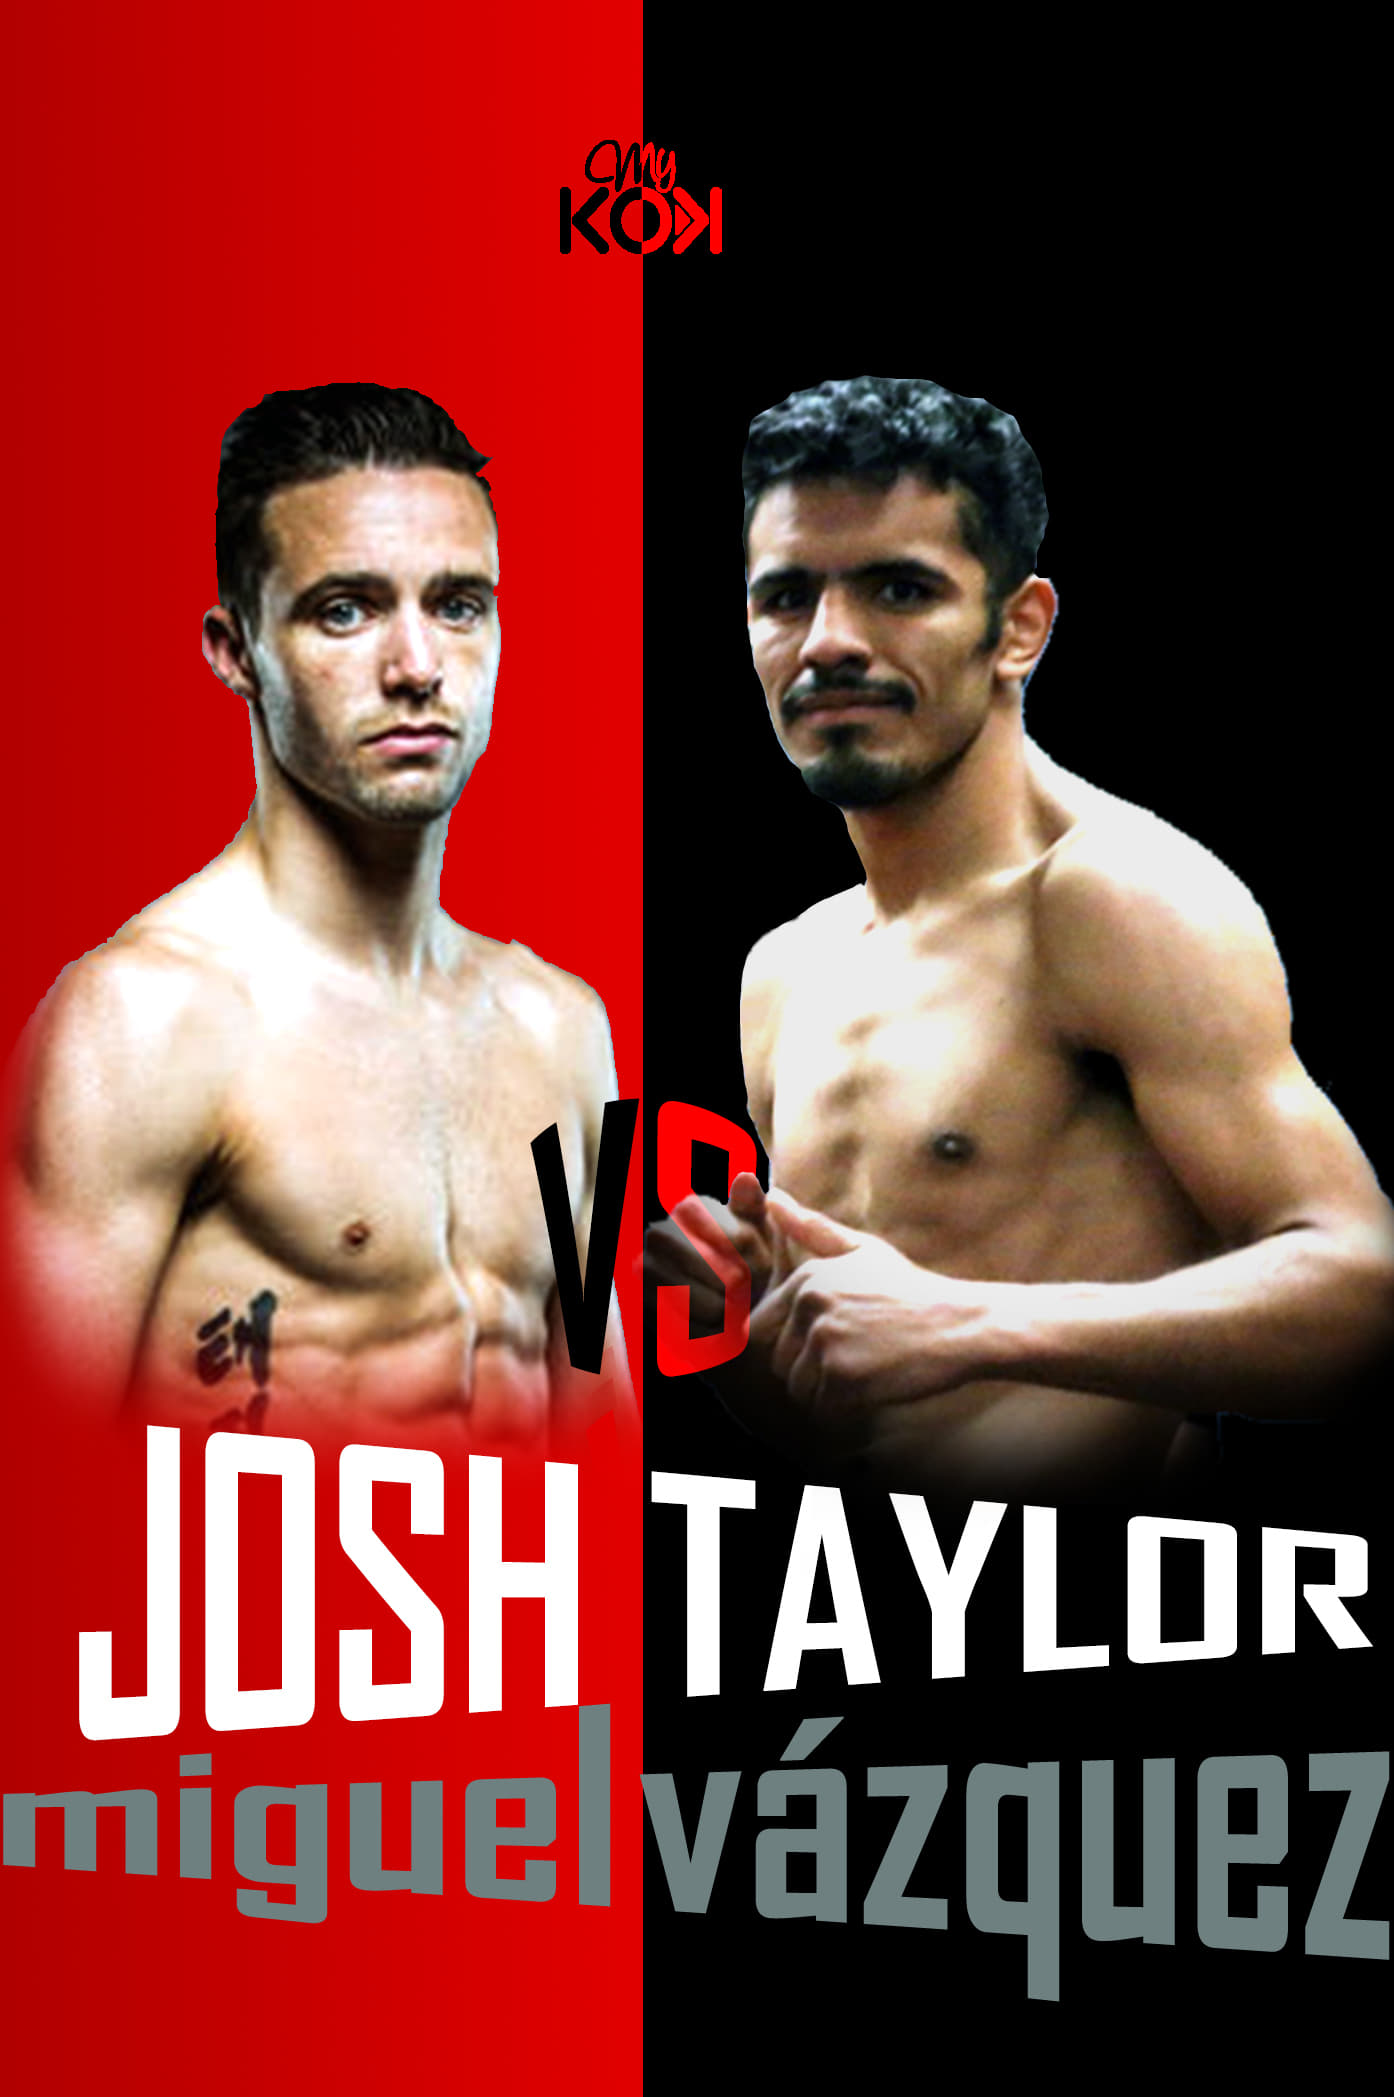 Josh Taylor vs. Miguel Vázquez